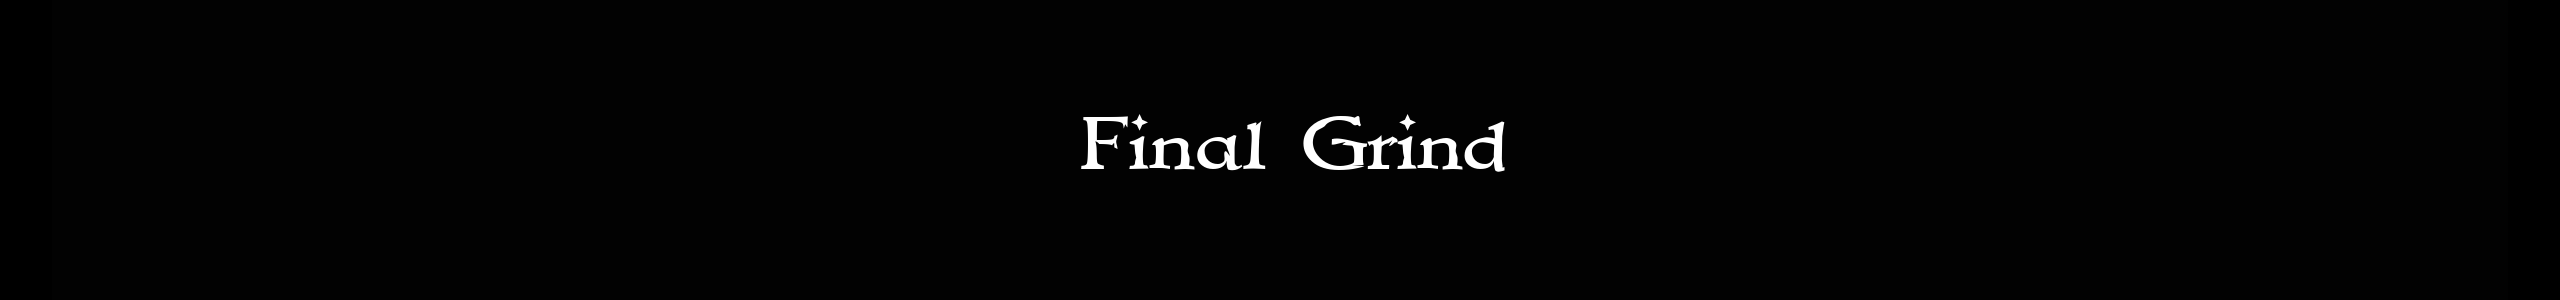 Final Grind